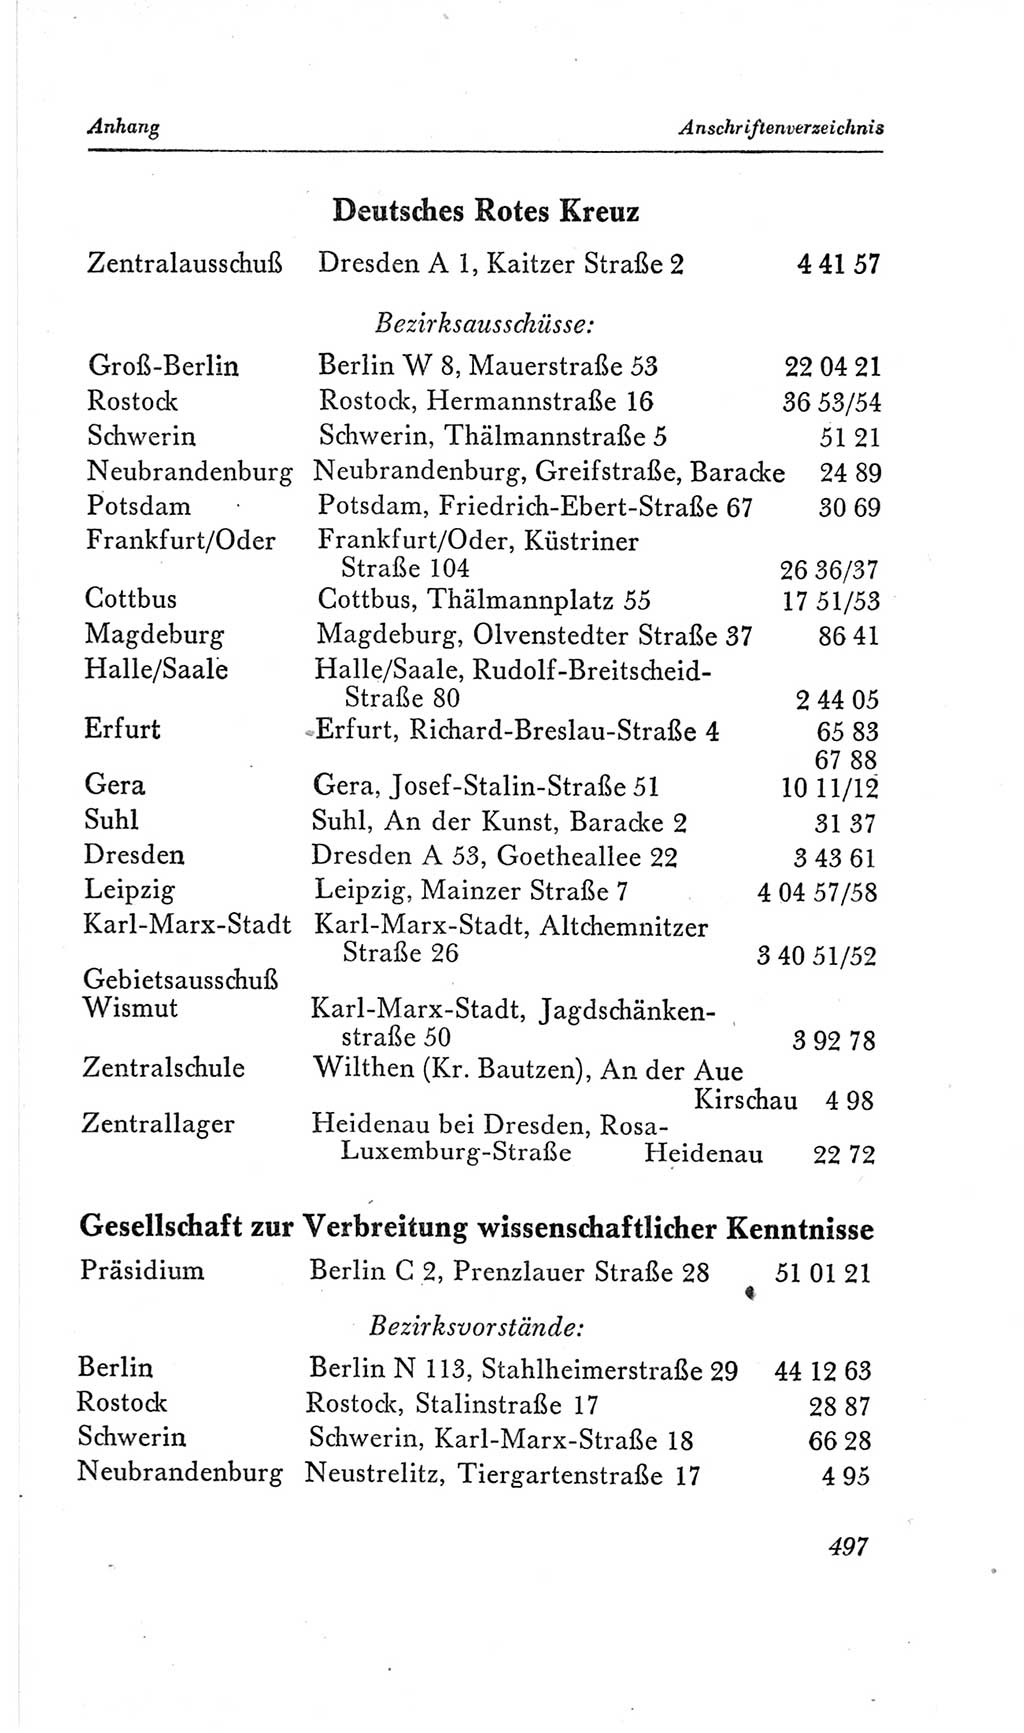 Handbuch der Volkskammer (VK) der Deutschen Demokratischen Republik (DDR), 2. Wahlperiode 1954-1958, Seite 497 (Hdb. VK. DDR, 2. WP. 1954-1958, S. 497)